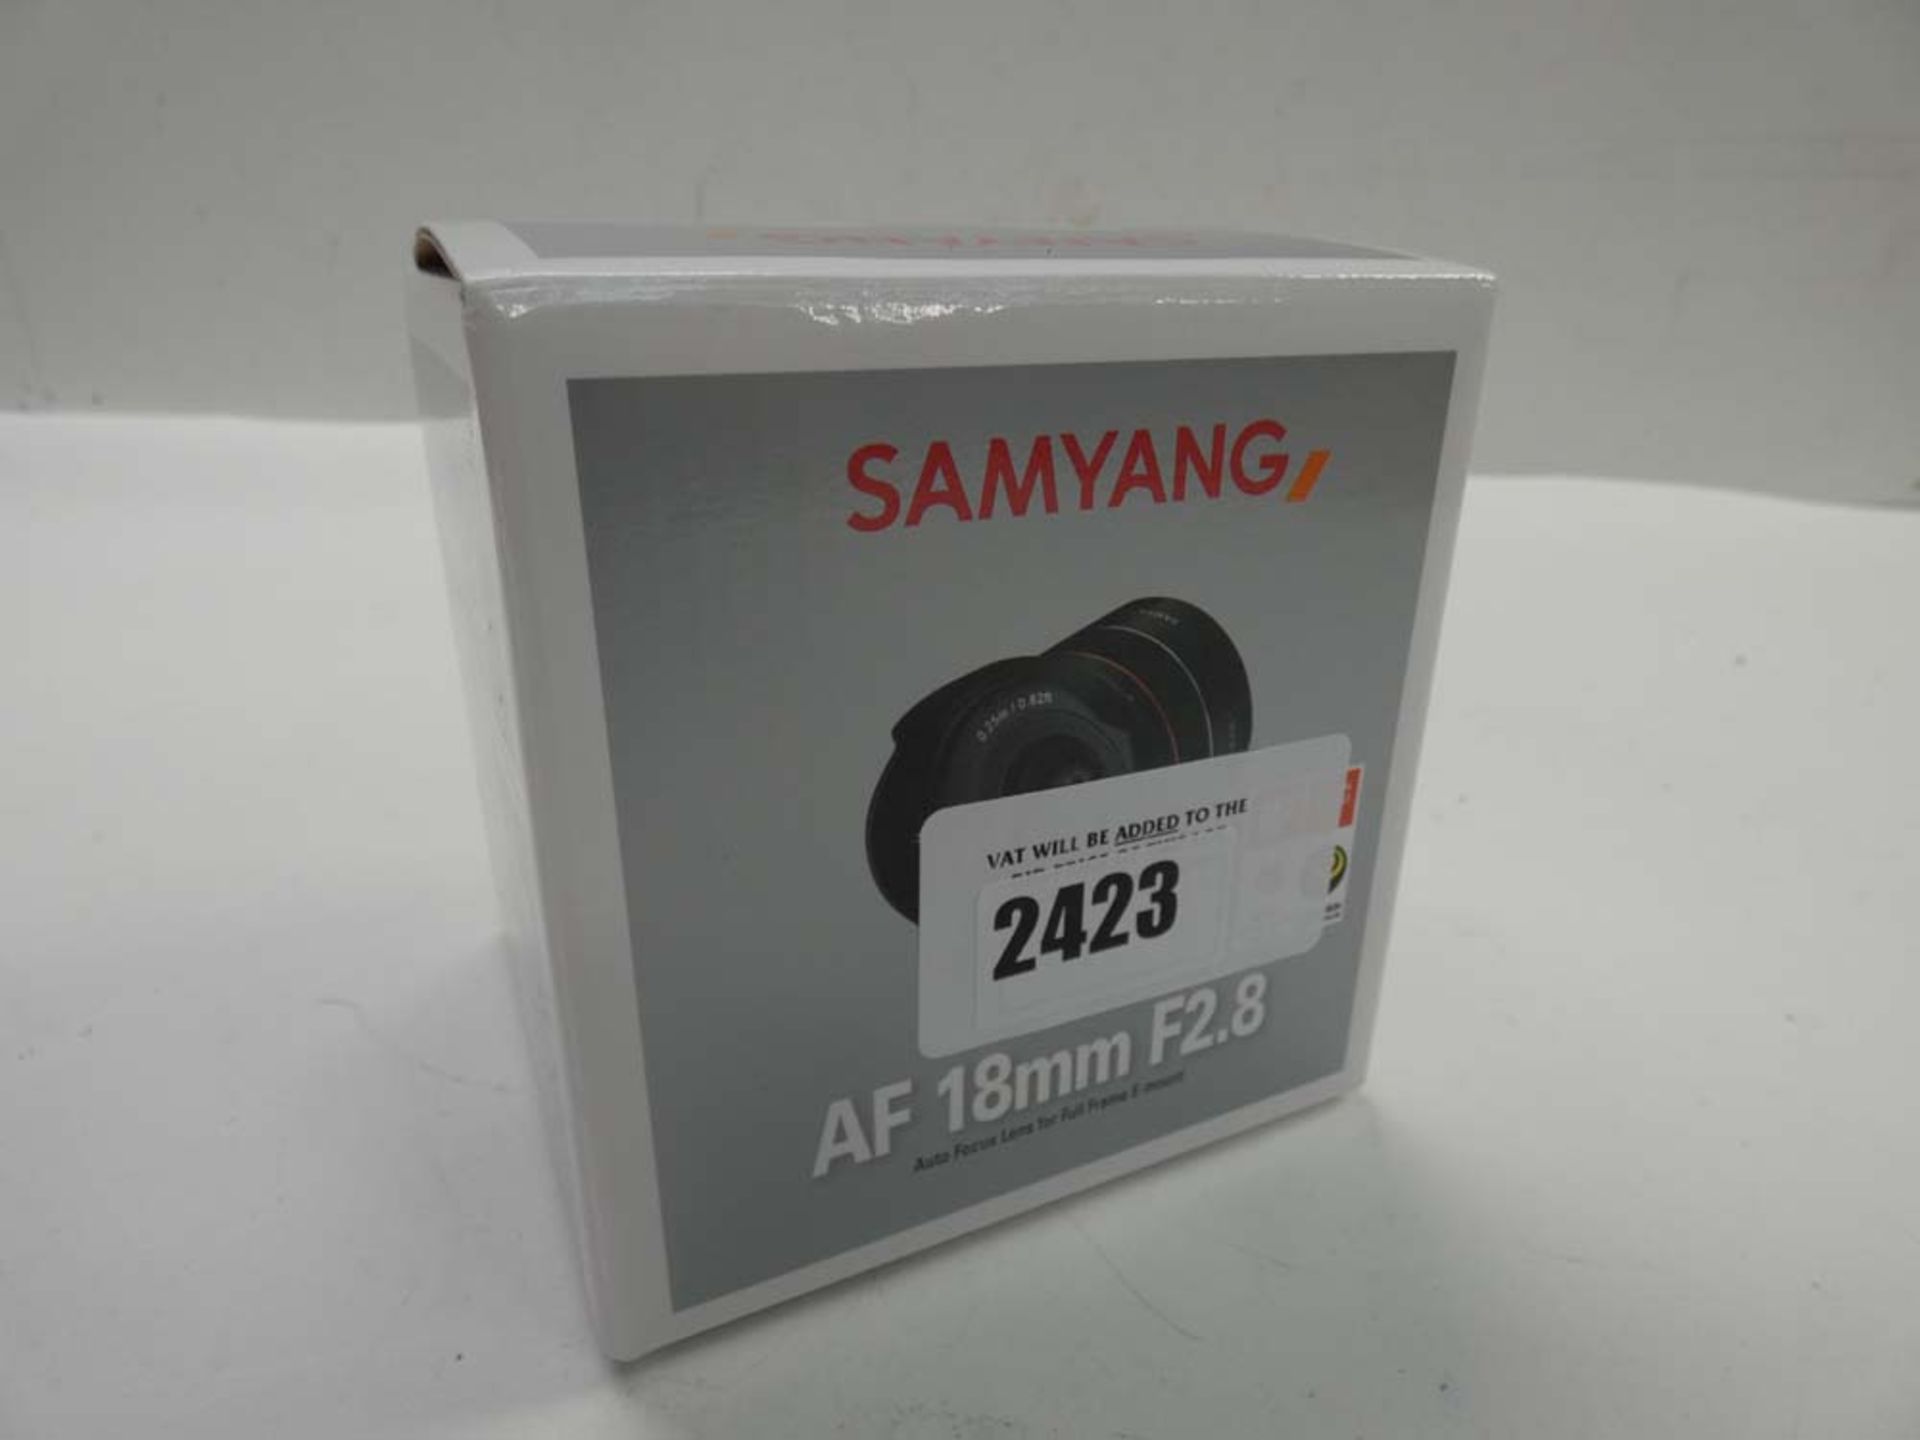 Samyang AF 18mm F2.8 lens for full frame e-mount